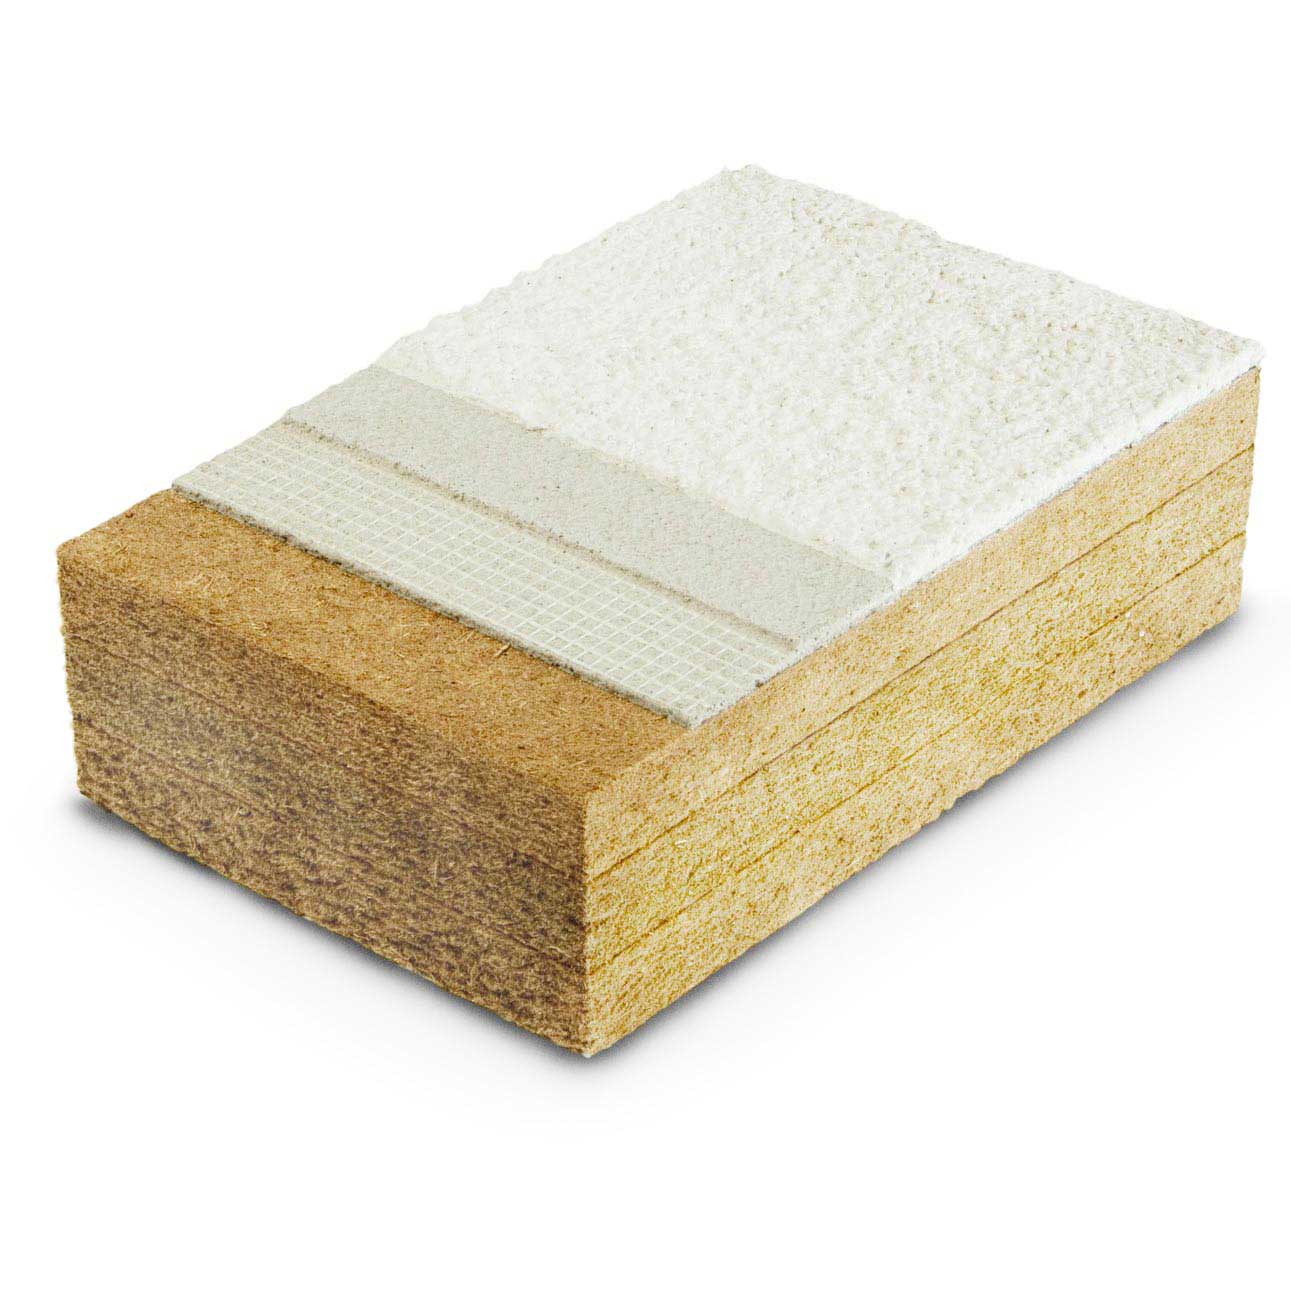 Fiber Wood Protect dry densities 110, 140, 180kg/m³